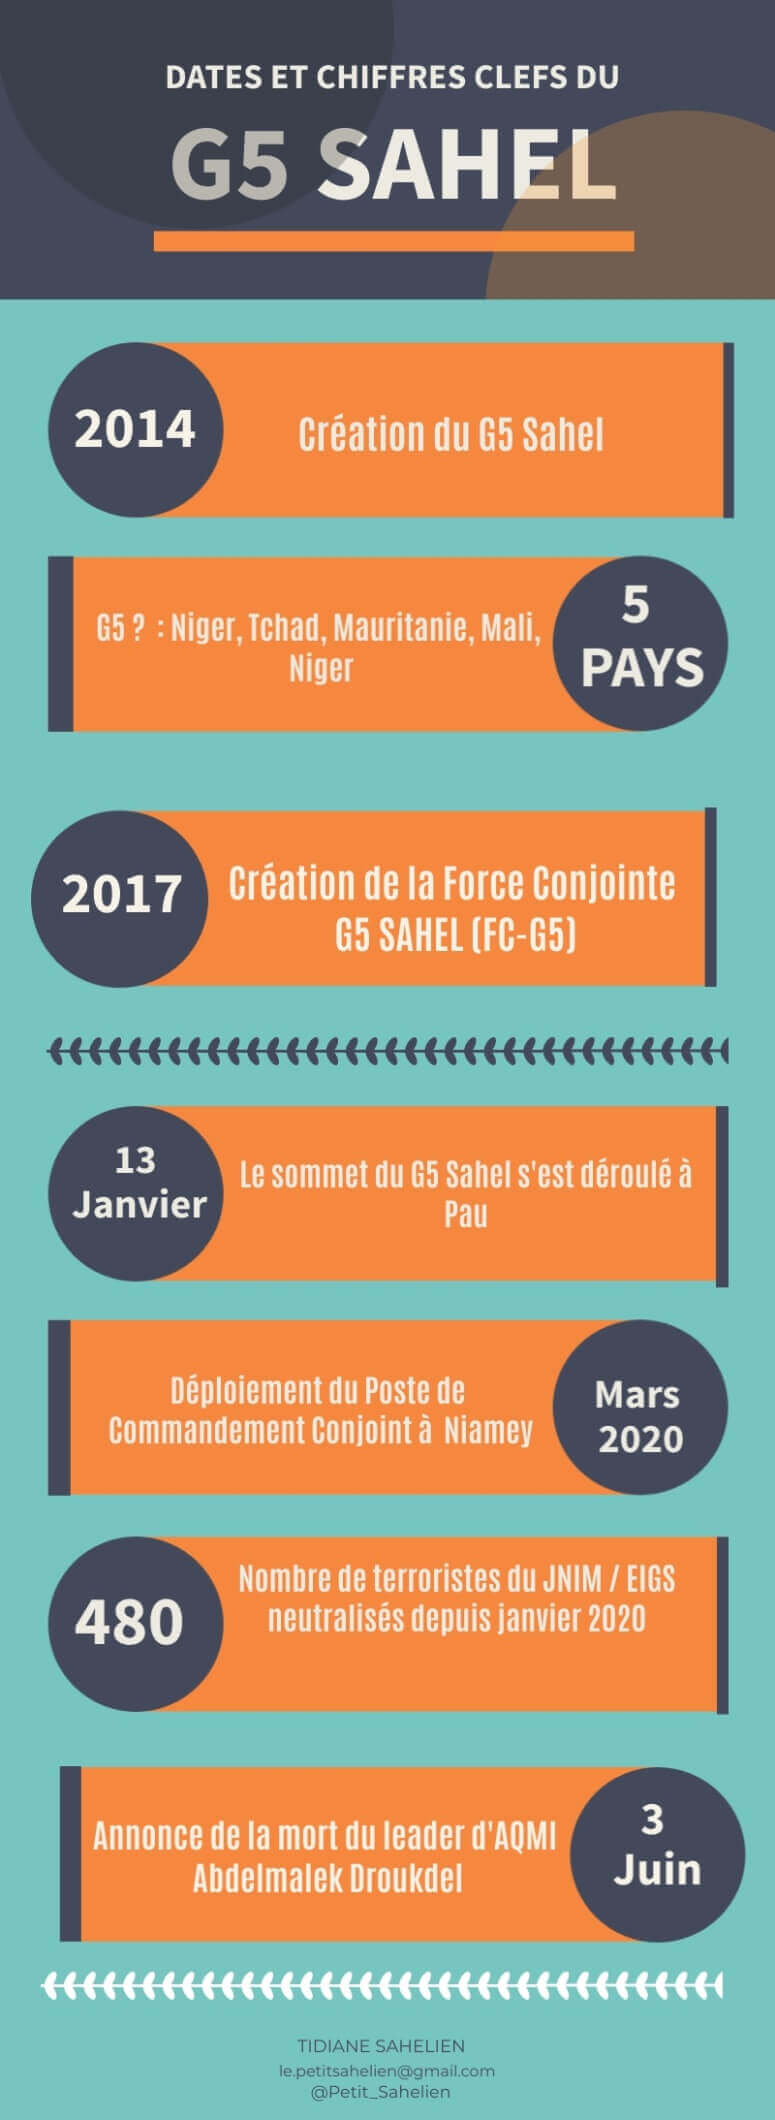 dateclefs G5 sahel infographie